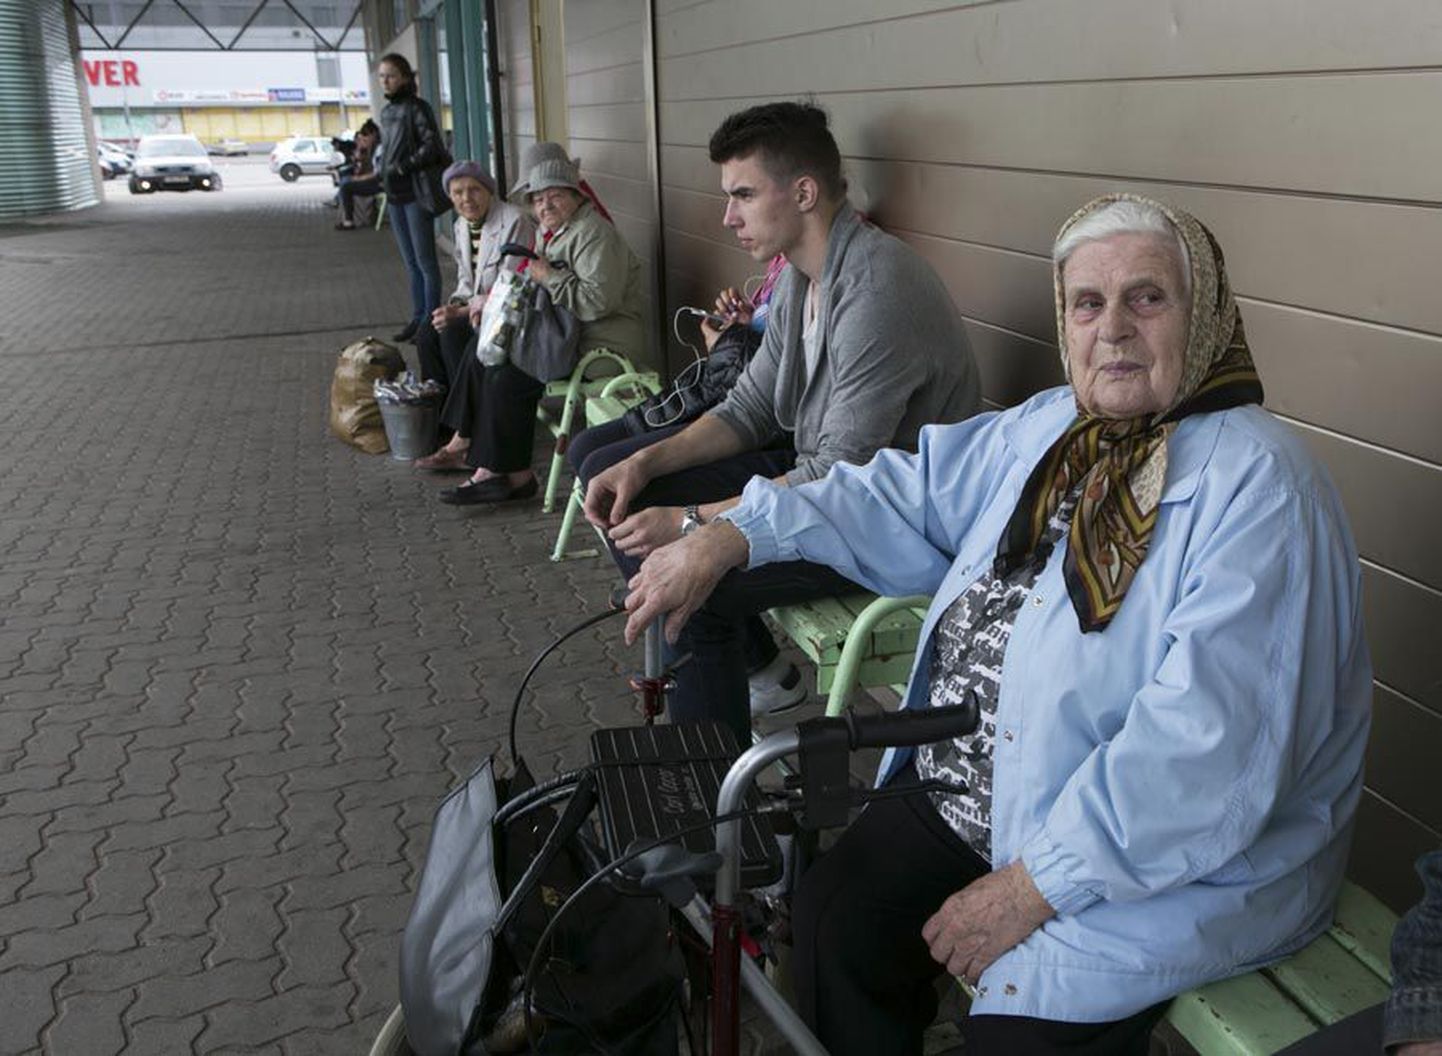 Eile pärastlõunal Viljandi bussijaamas Kolga-Jaani bussi oodanud Loreida Põldmaa märkis, et elu läheb kogu aeg kallimaks. Seetõttu ei imestanud ta ka bussipiletite hinnatõusu üle.